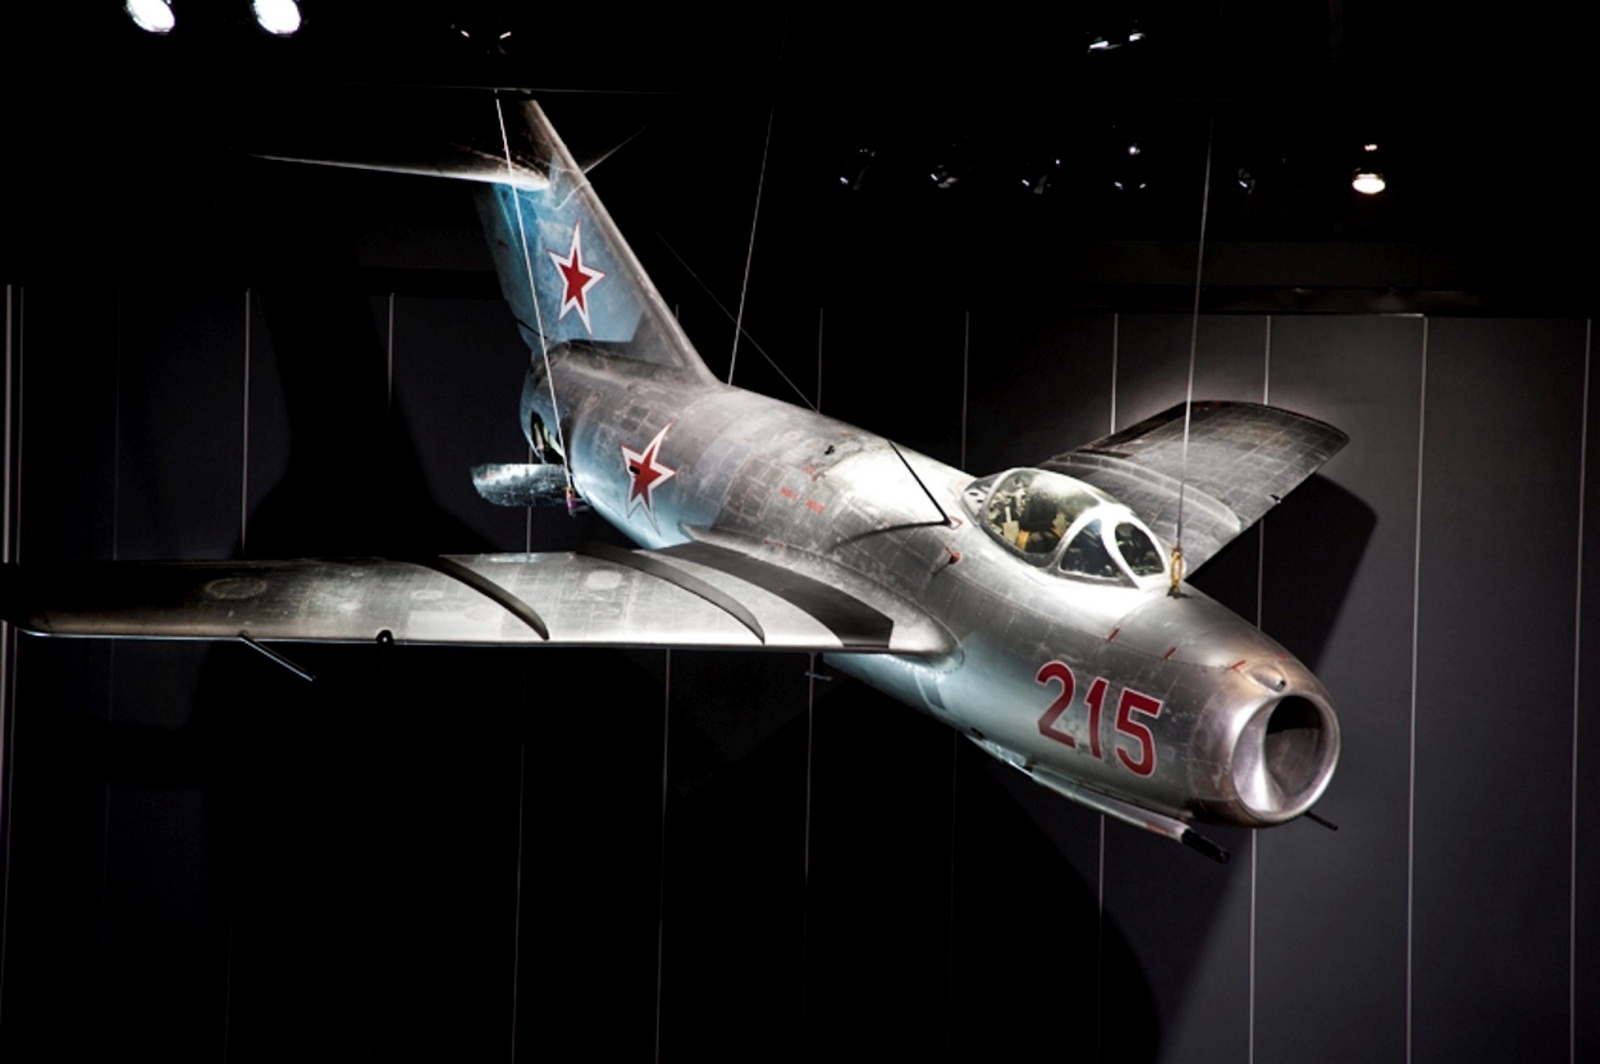 Det var ett flygplan av typen MiG-15 som sköt ner två svenska flygplan över Östersjön under 1950-talet.